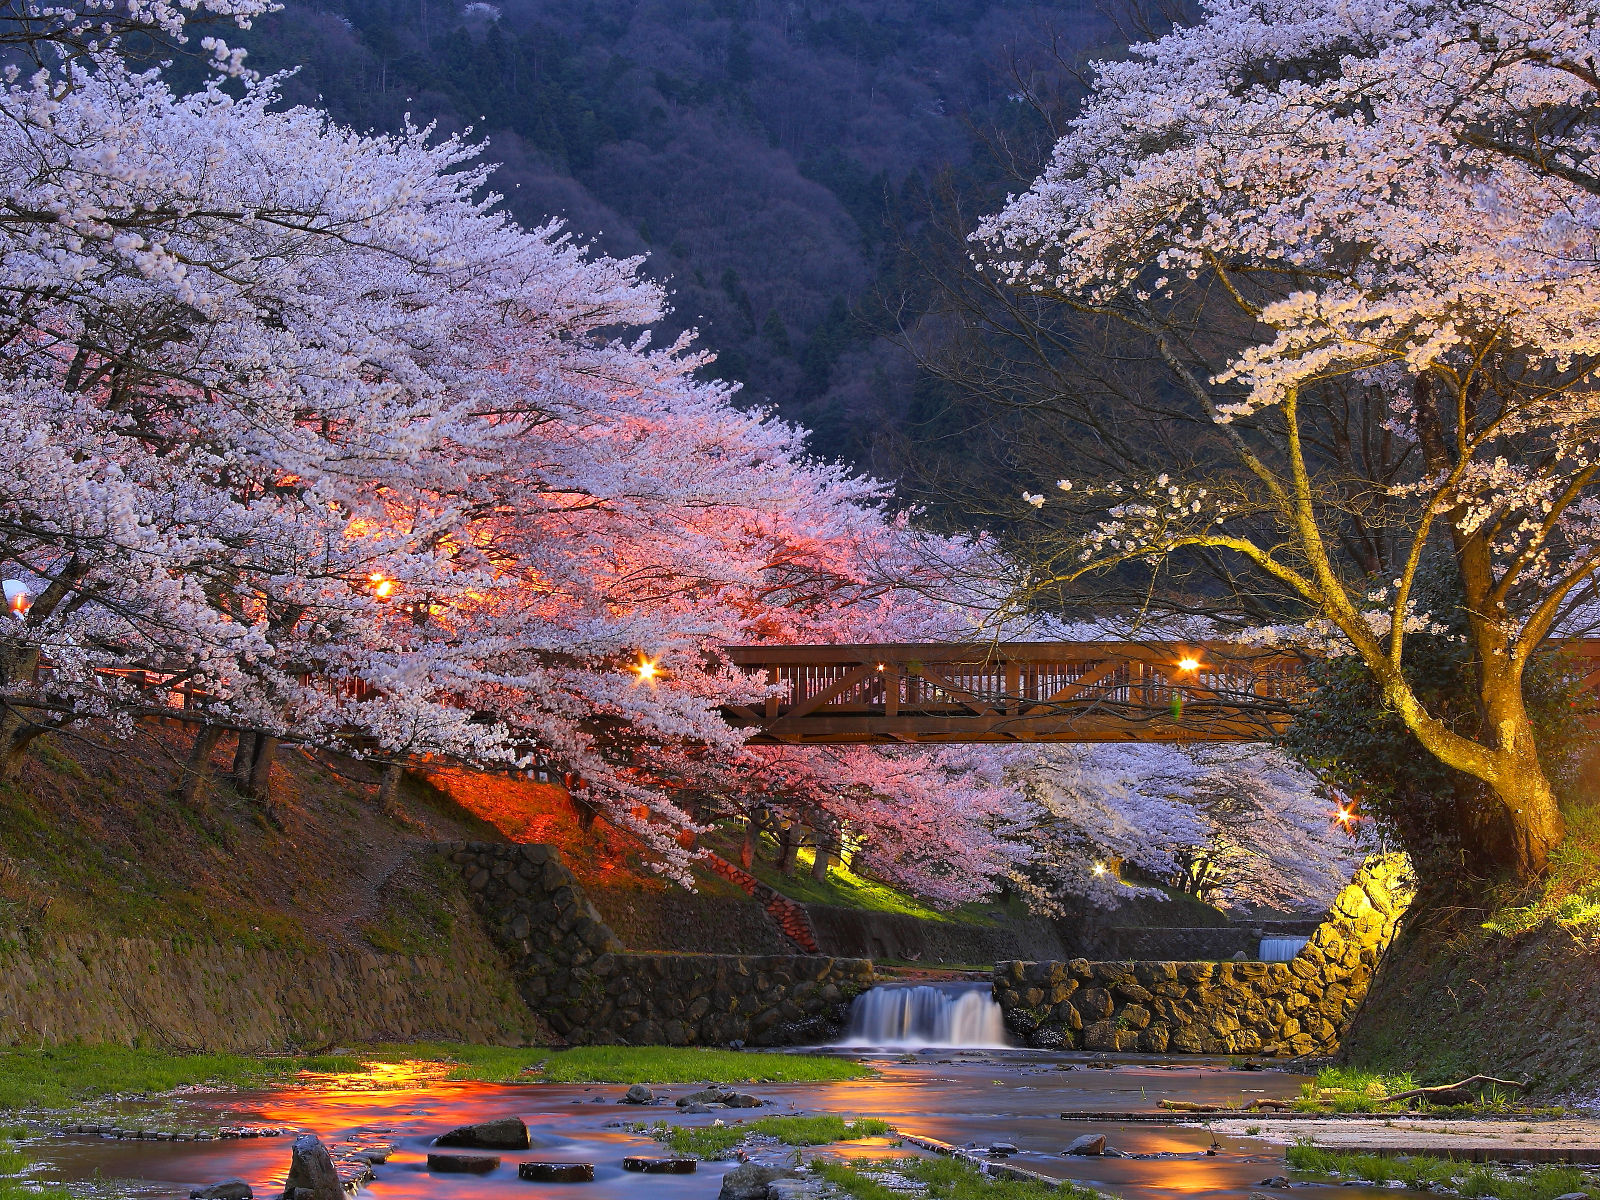 京都の地名かっこよすぎンゴ…:哲学ニュースnwk